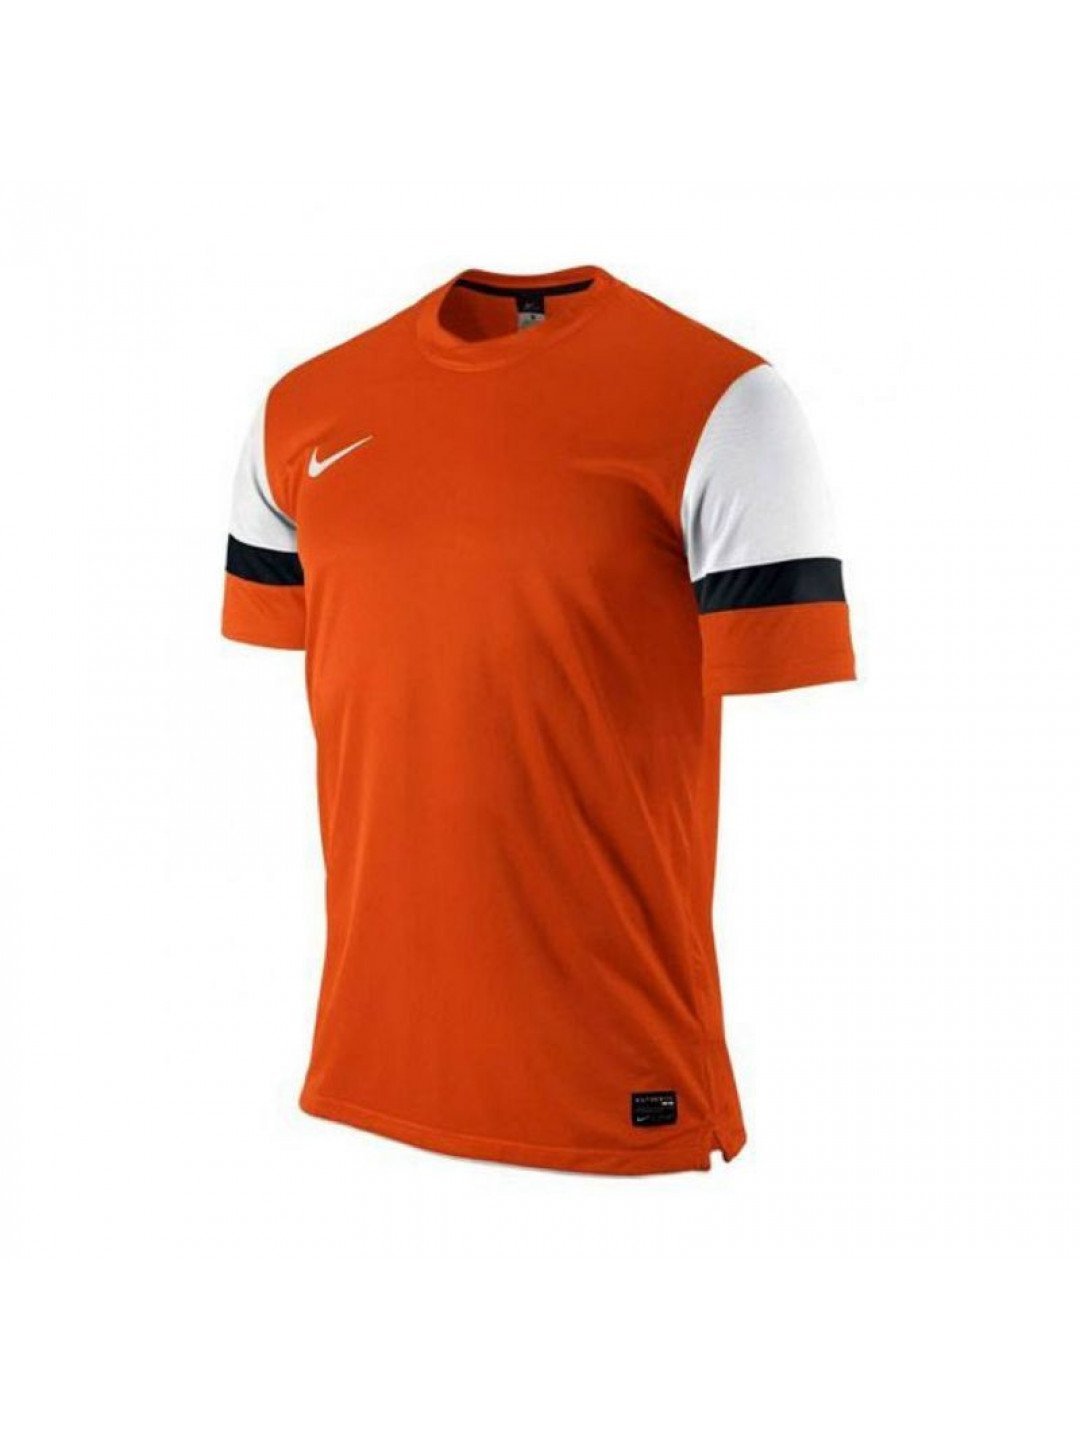 Pánské fotbalové tričko Trophy M 413138-811 – Nike XL 188 cm